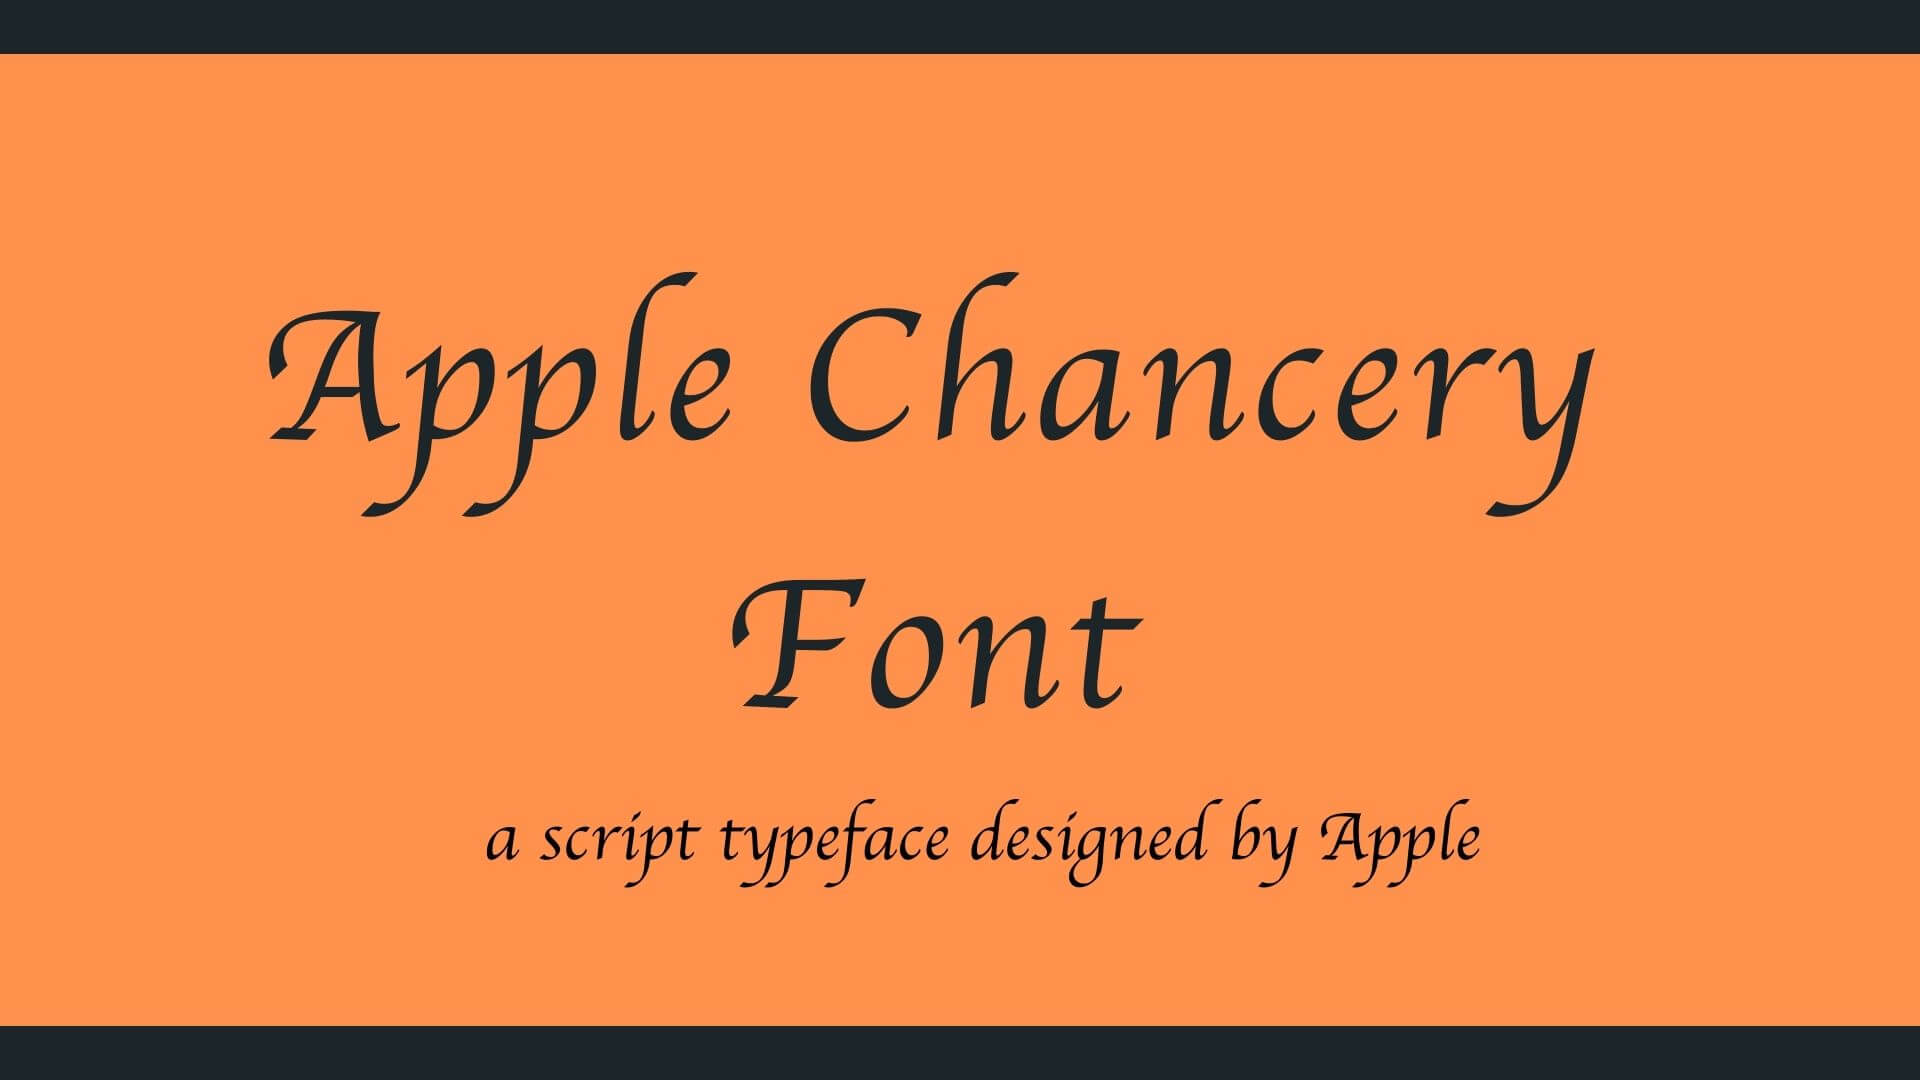 Free apple fonts download - platformver